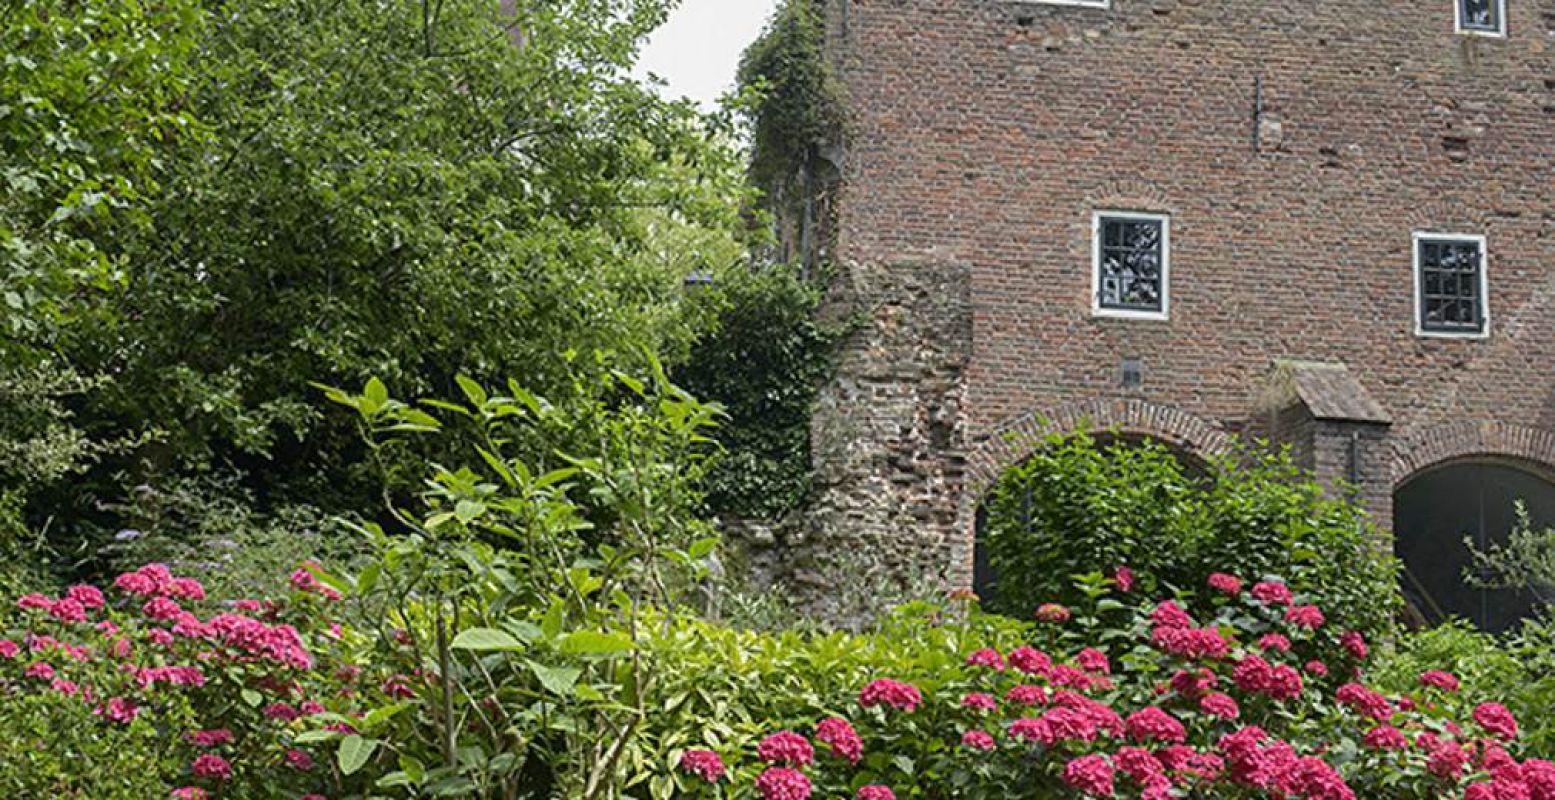 Bekijk de tuin van bastion Sterrenburg op de Open Tuinendag. Foto: Open Tuinendag Utrecht